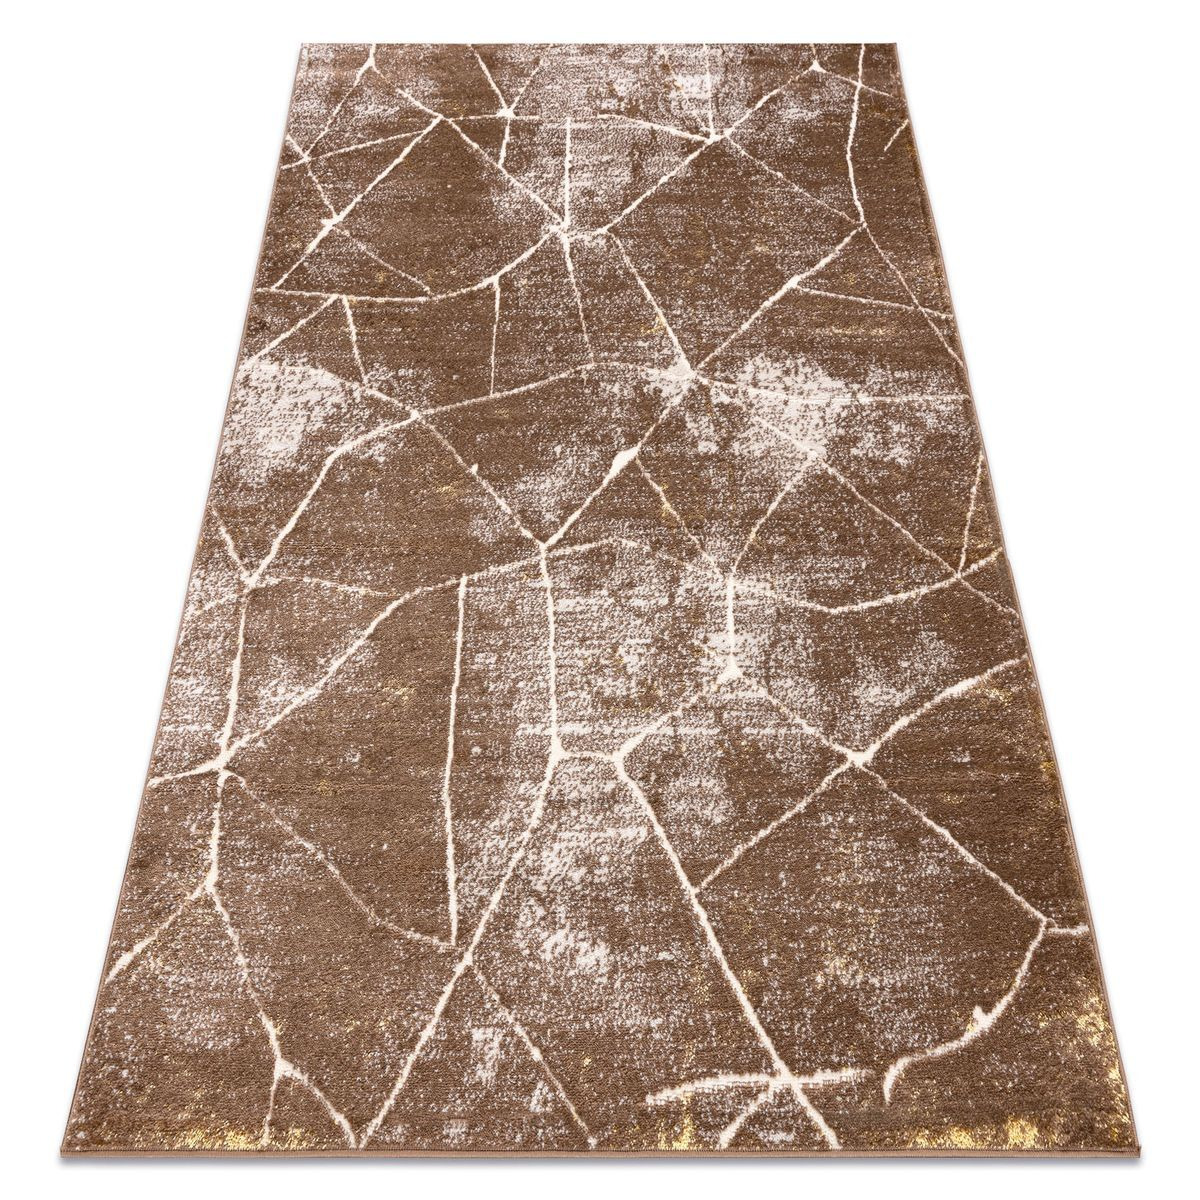 Harrisel Cookaric And Vintage Rug Dark Beige, 140x190 cm - image 1